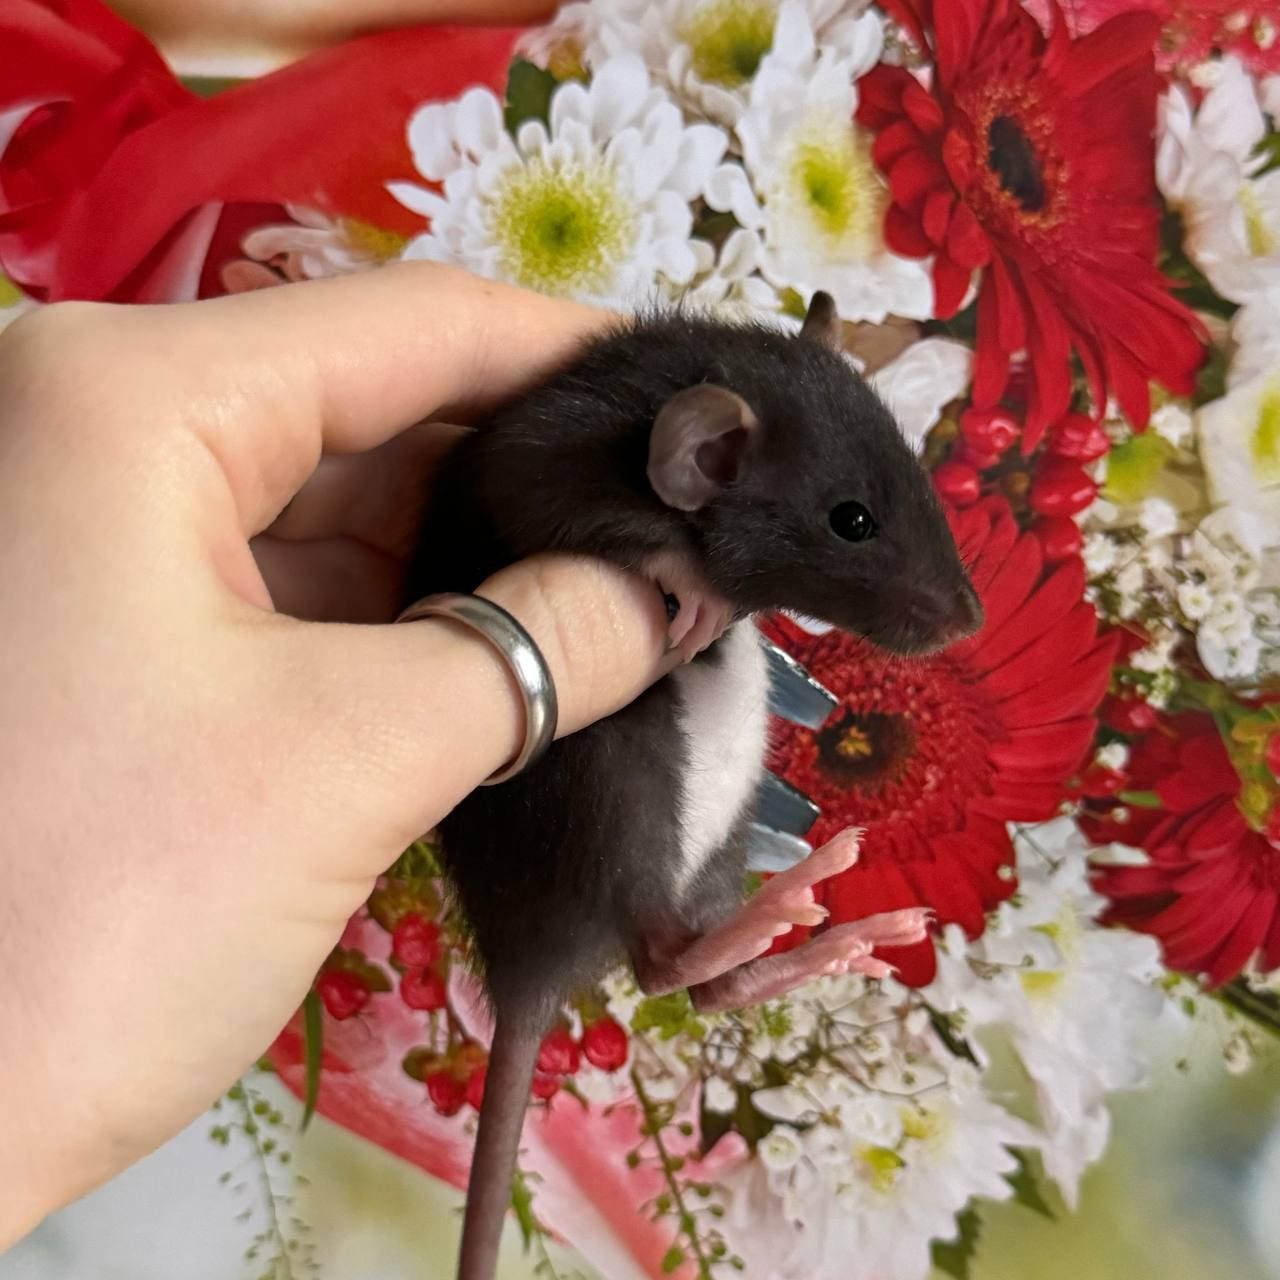 Дамбо Рекс малыши крысята купить в Харькове крысу с доставкой крысенка